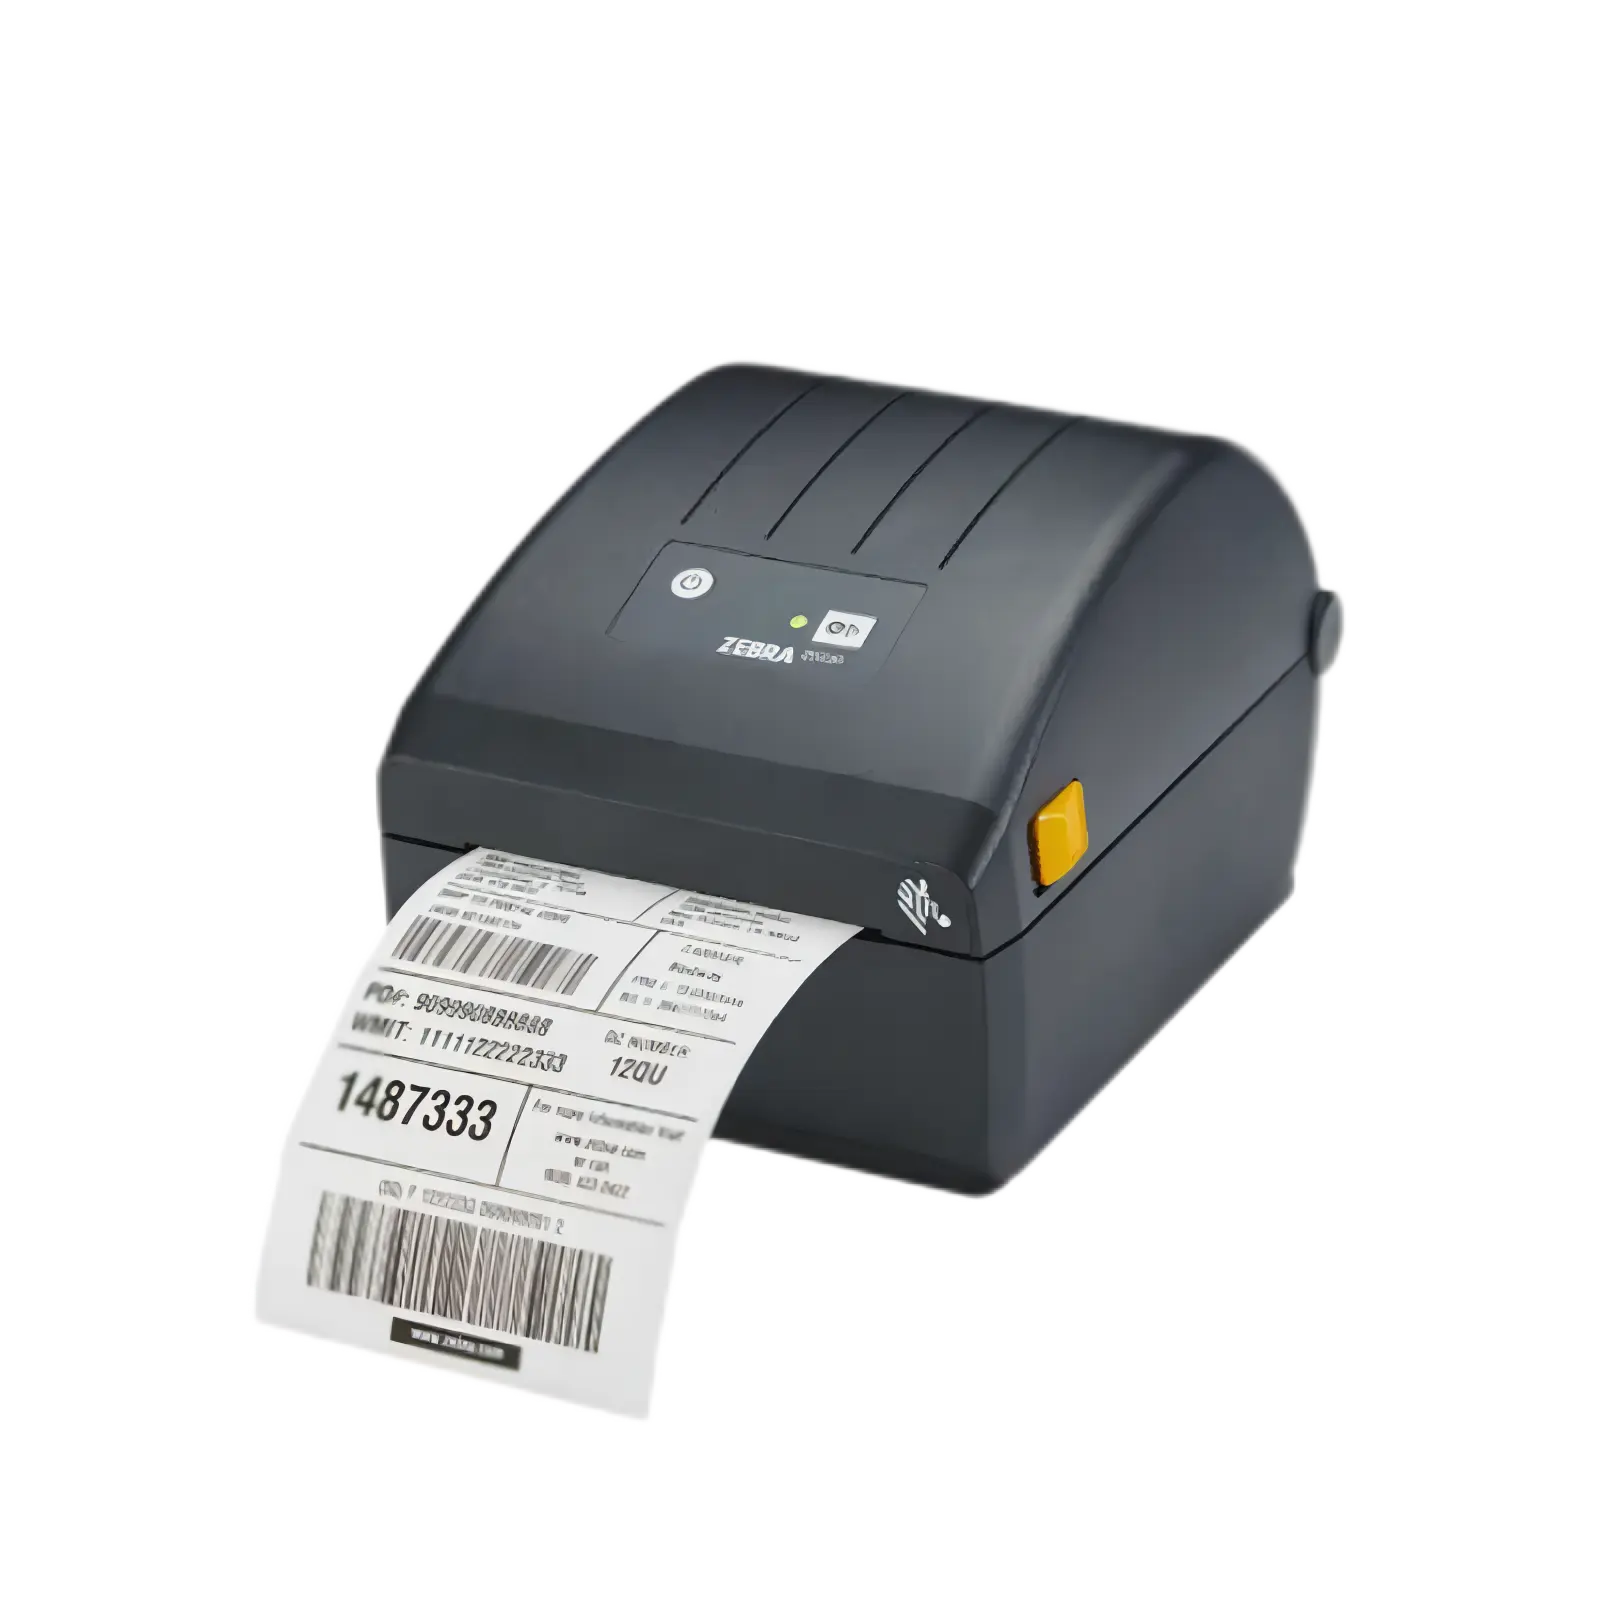 Zd 888T Printer Voor Zebra Vervanging Van Zd220 Thermische Overdracht 4 Inch Lint Desktop Barcode Printer Machine